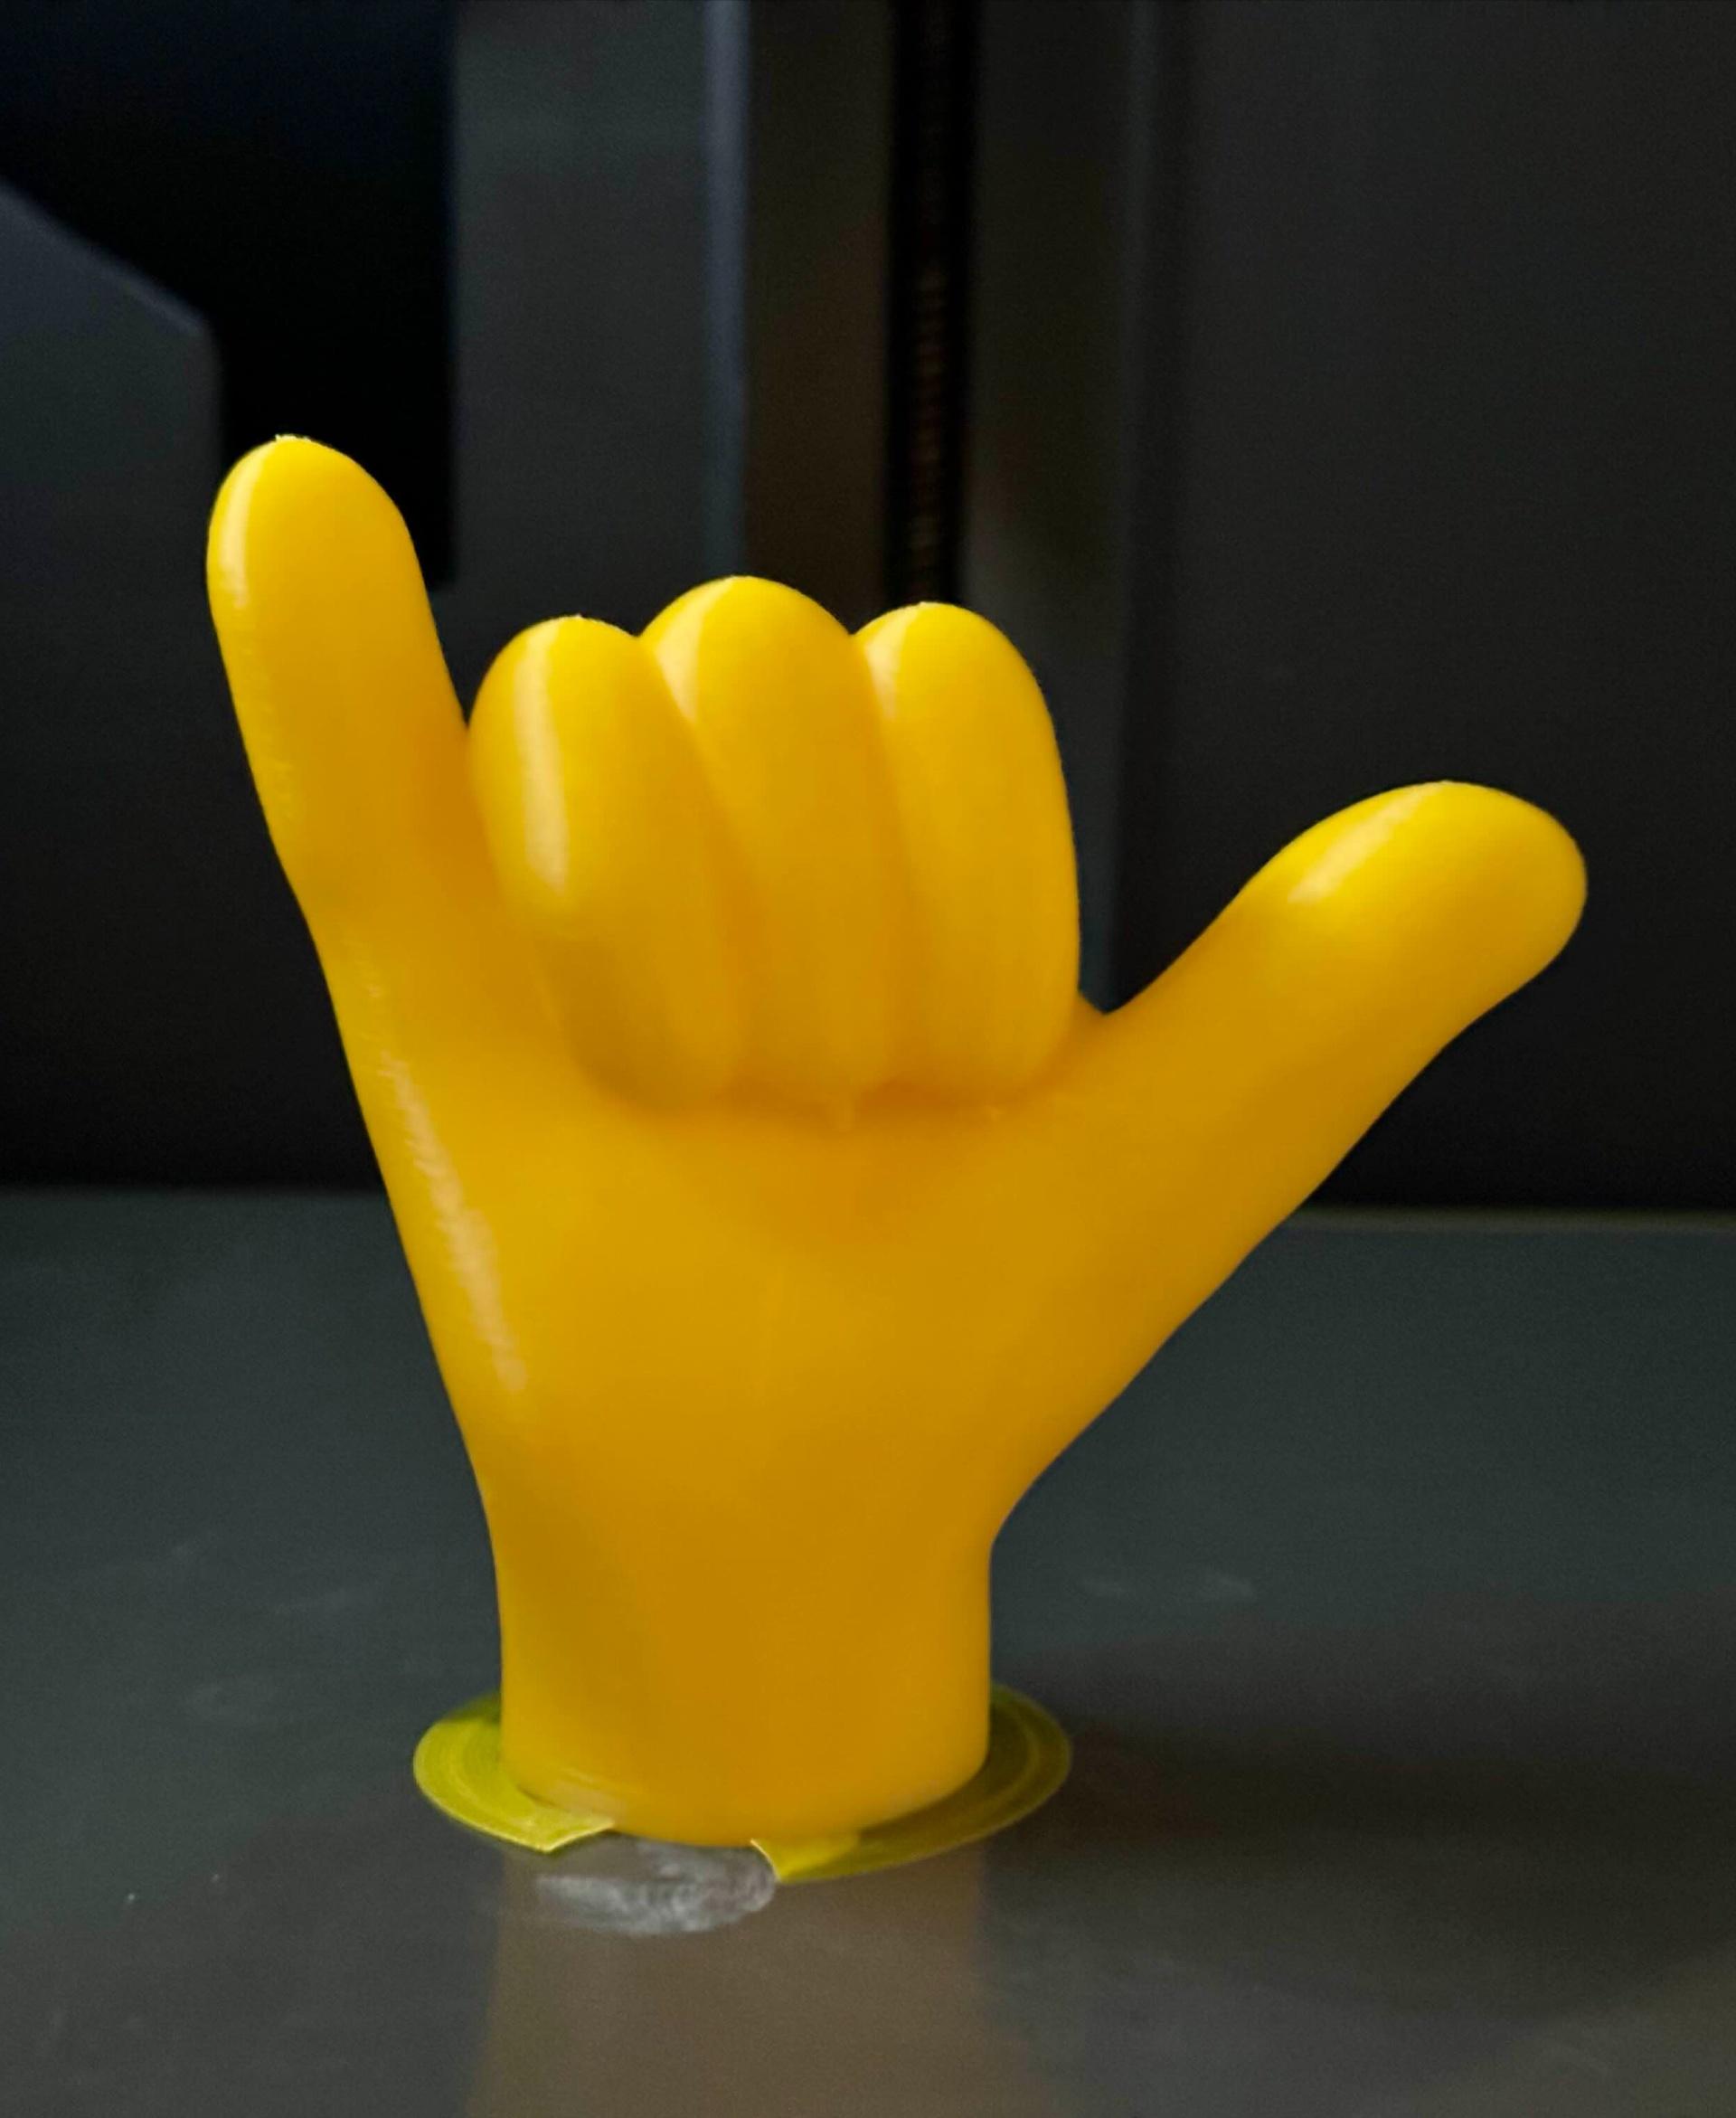 EMOJI HAND 🤙 CALL ME HAND / HANG LOOSE 3d model